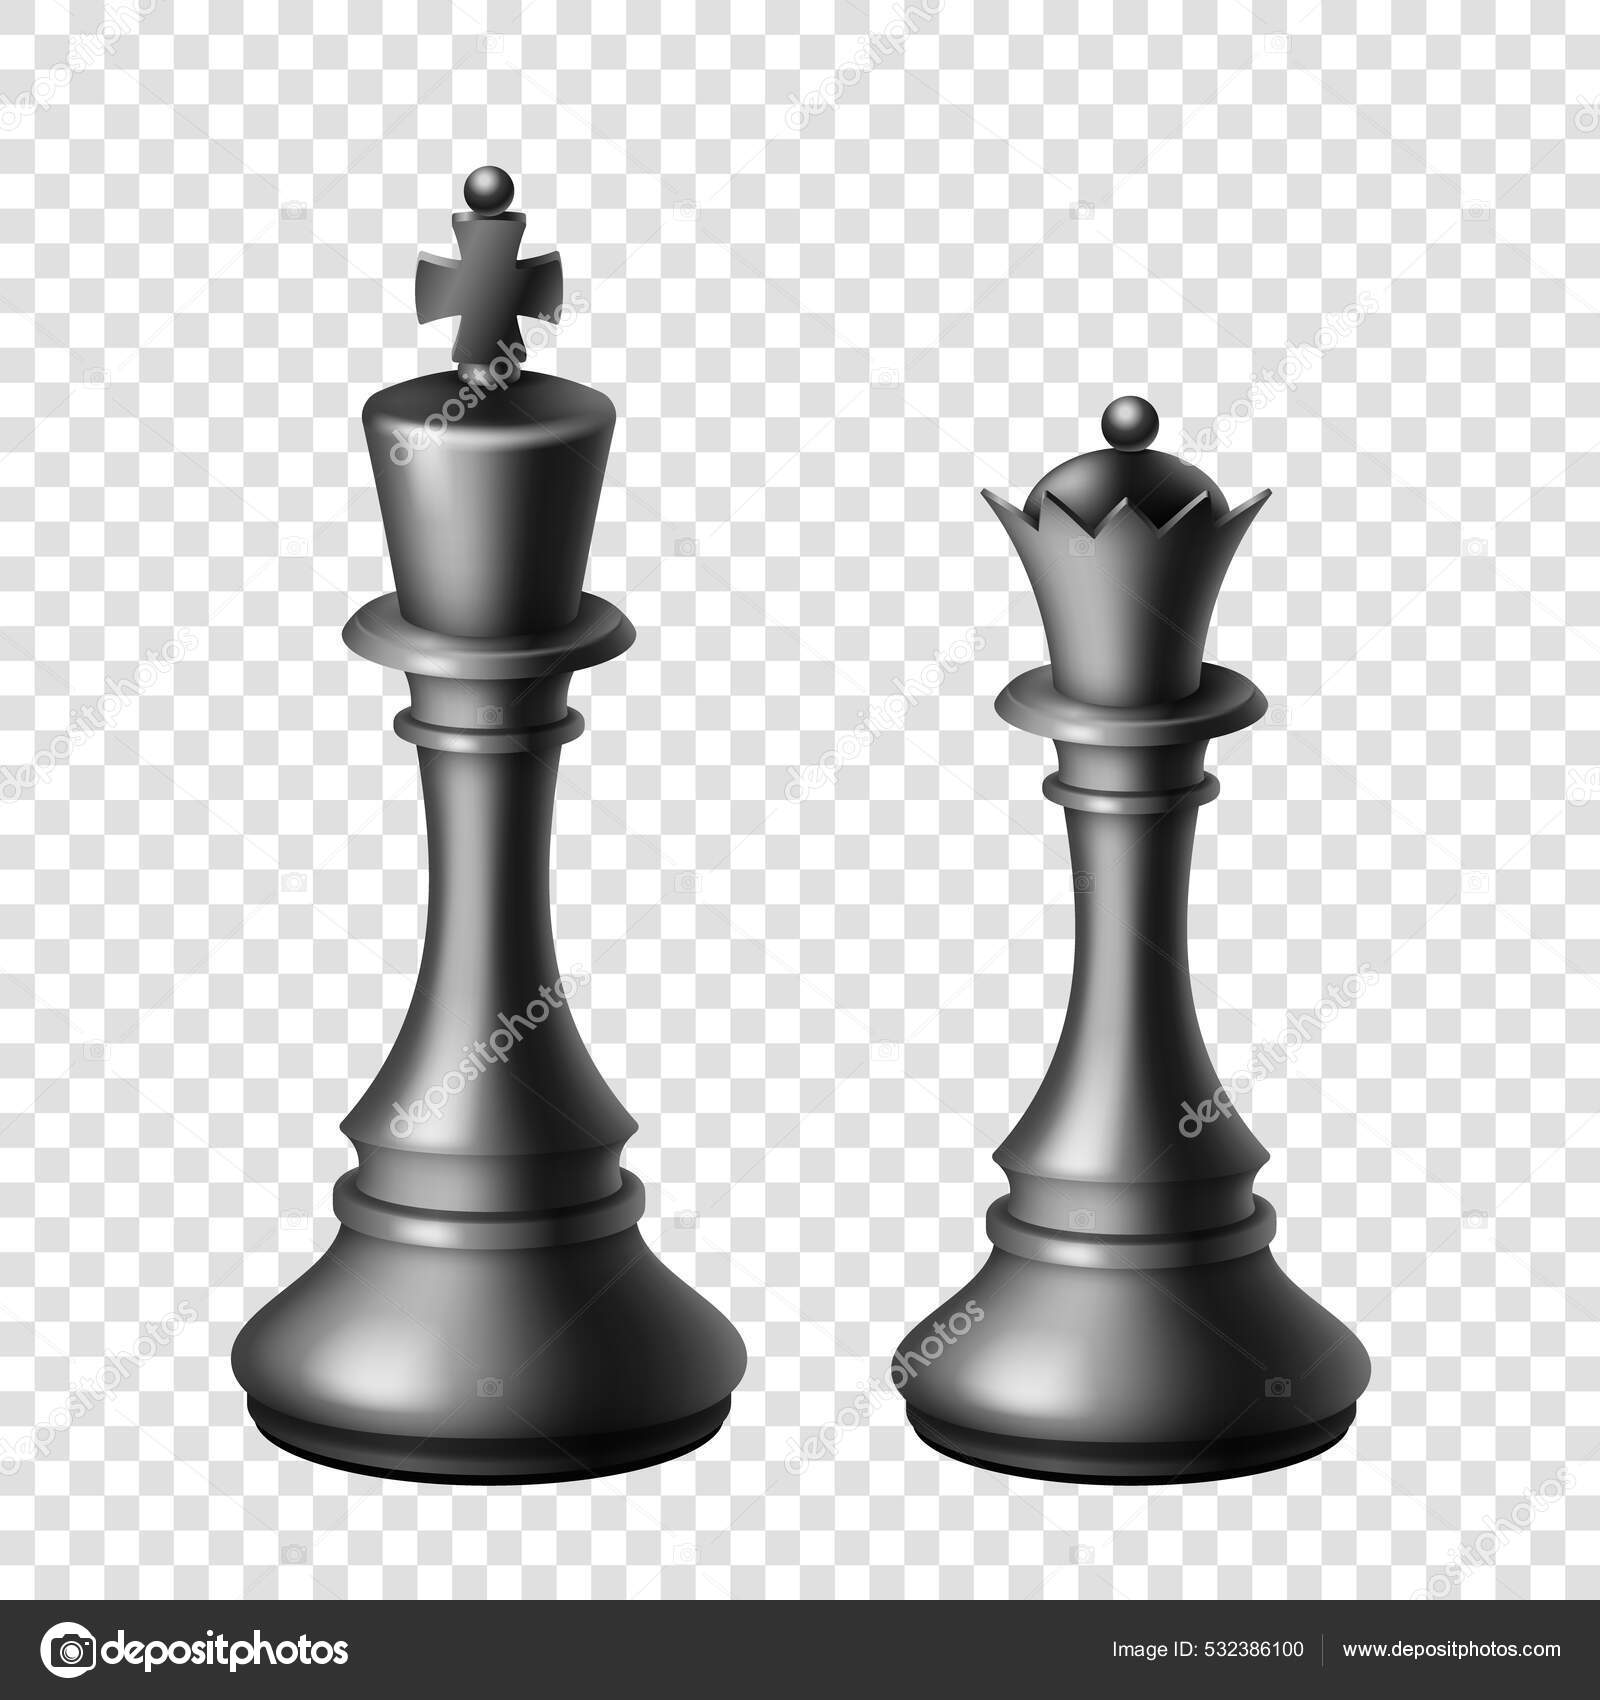 Tabuleiro de xadrez realista com conjunto de figuras em preto e branco 3d